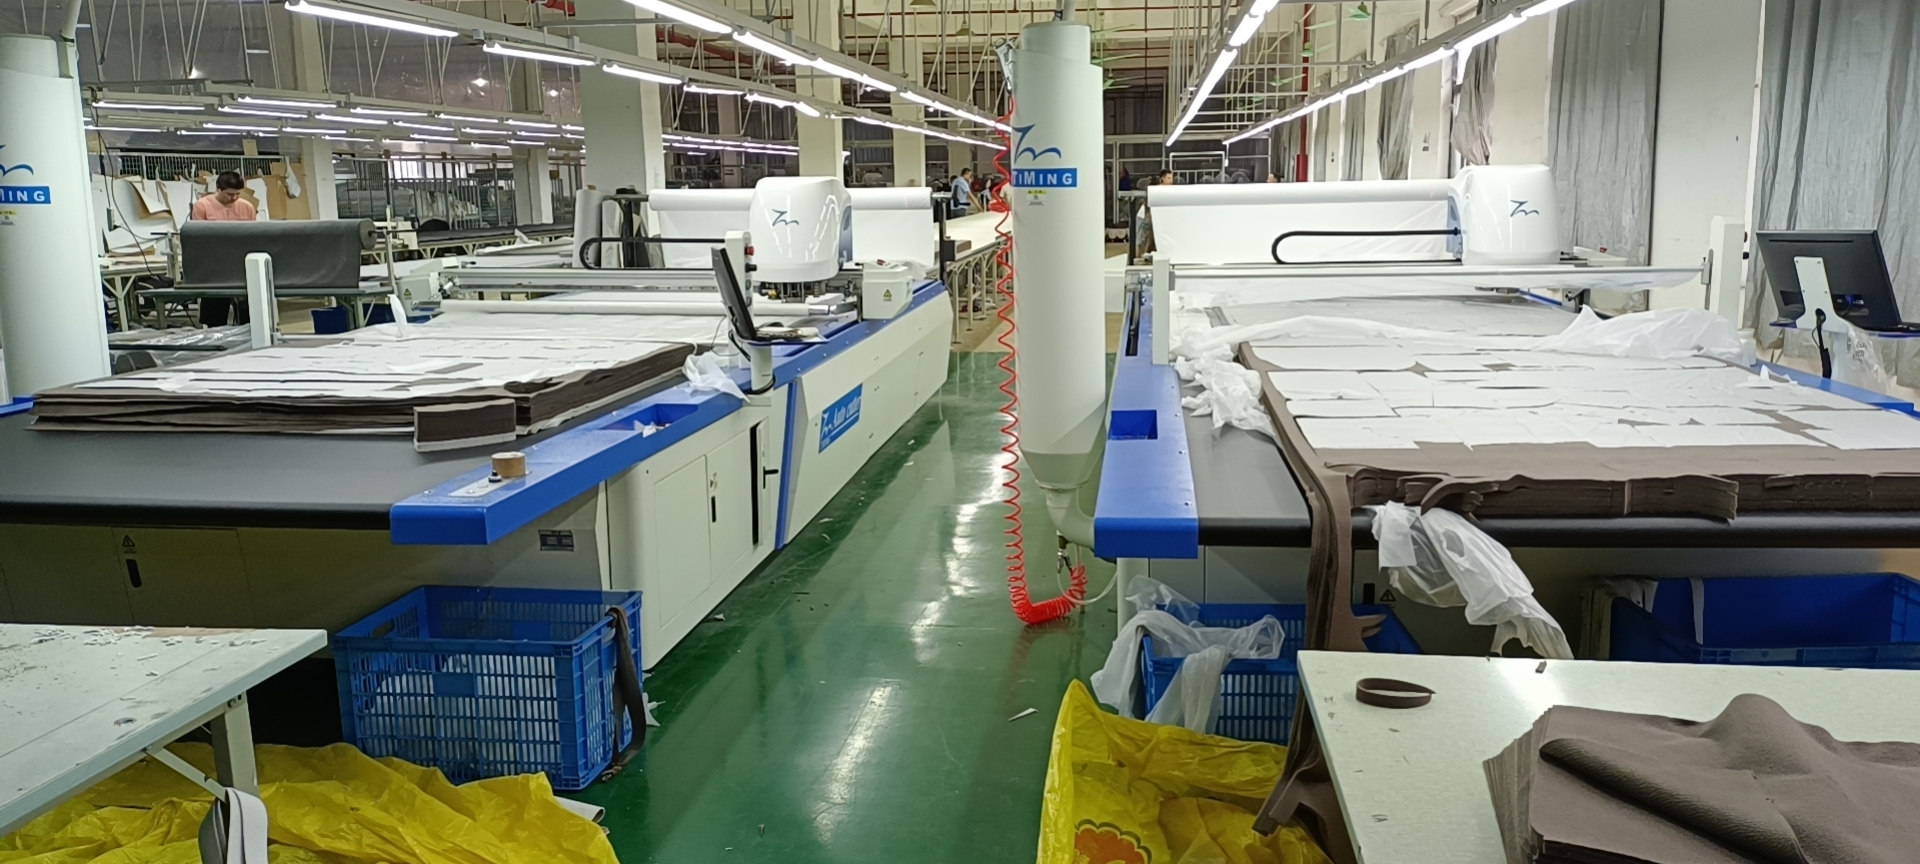 Automatic cutter machine for sofa suede fabric cutting